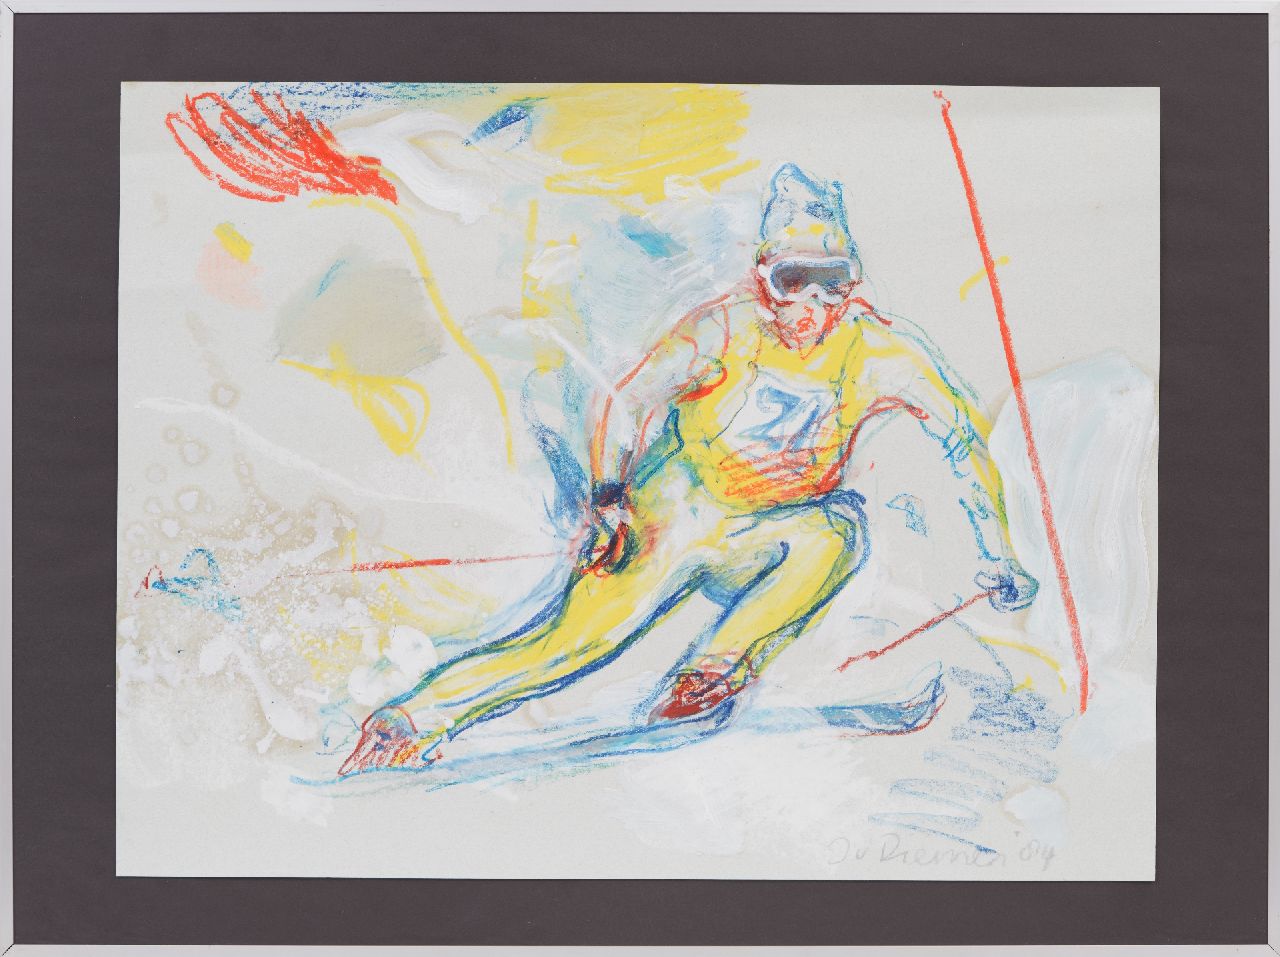 Diemen J. van | Jan van Diemen, Slalom-Skifahrer, Gouache und Kreide auf Papier 50,0 x 65,0 cm, Unterzeichnet u.r. und datiert '84